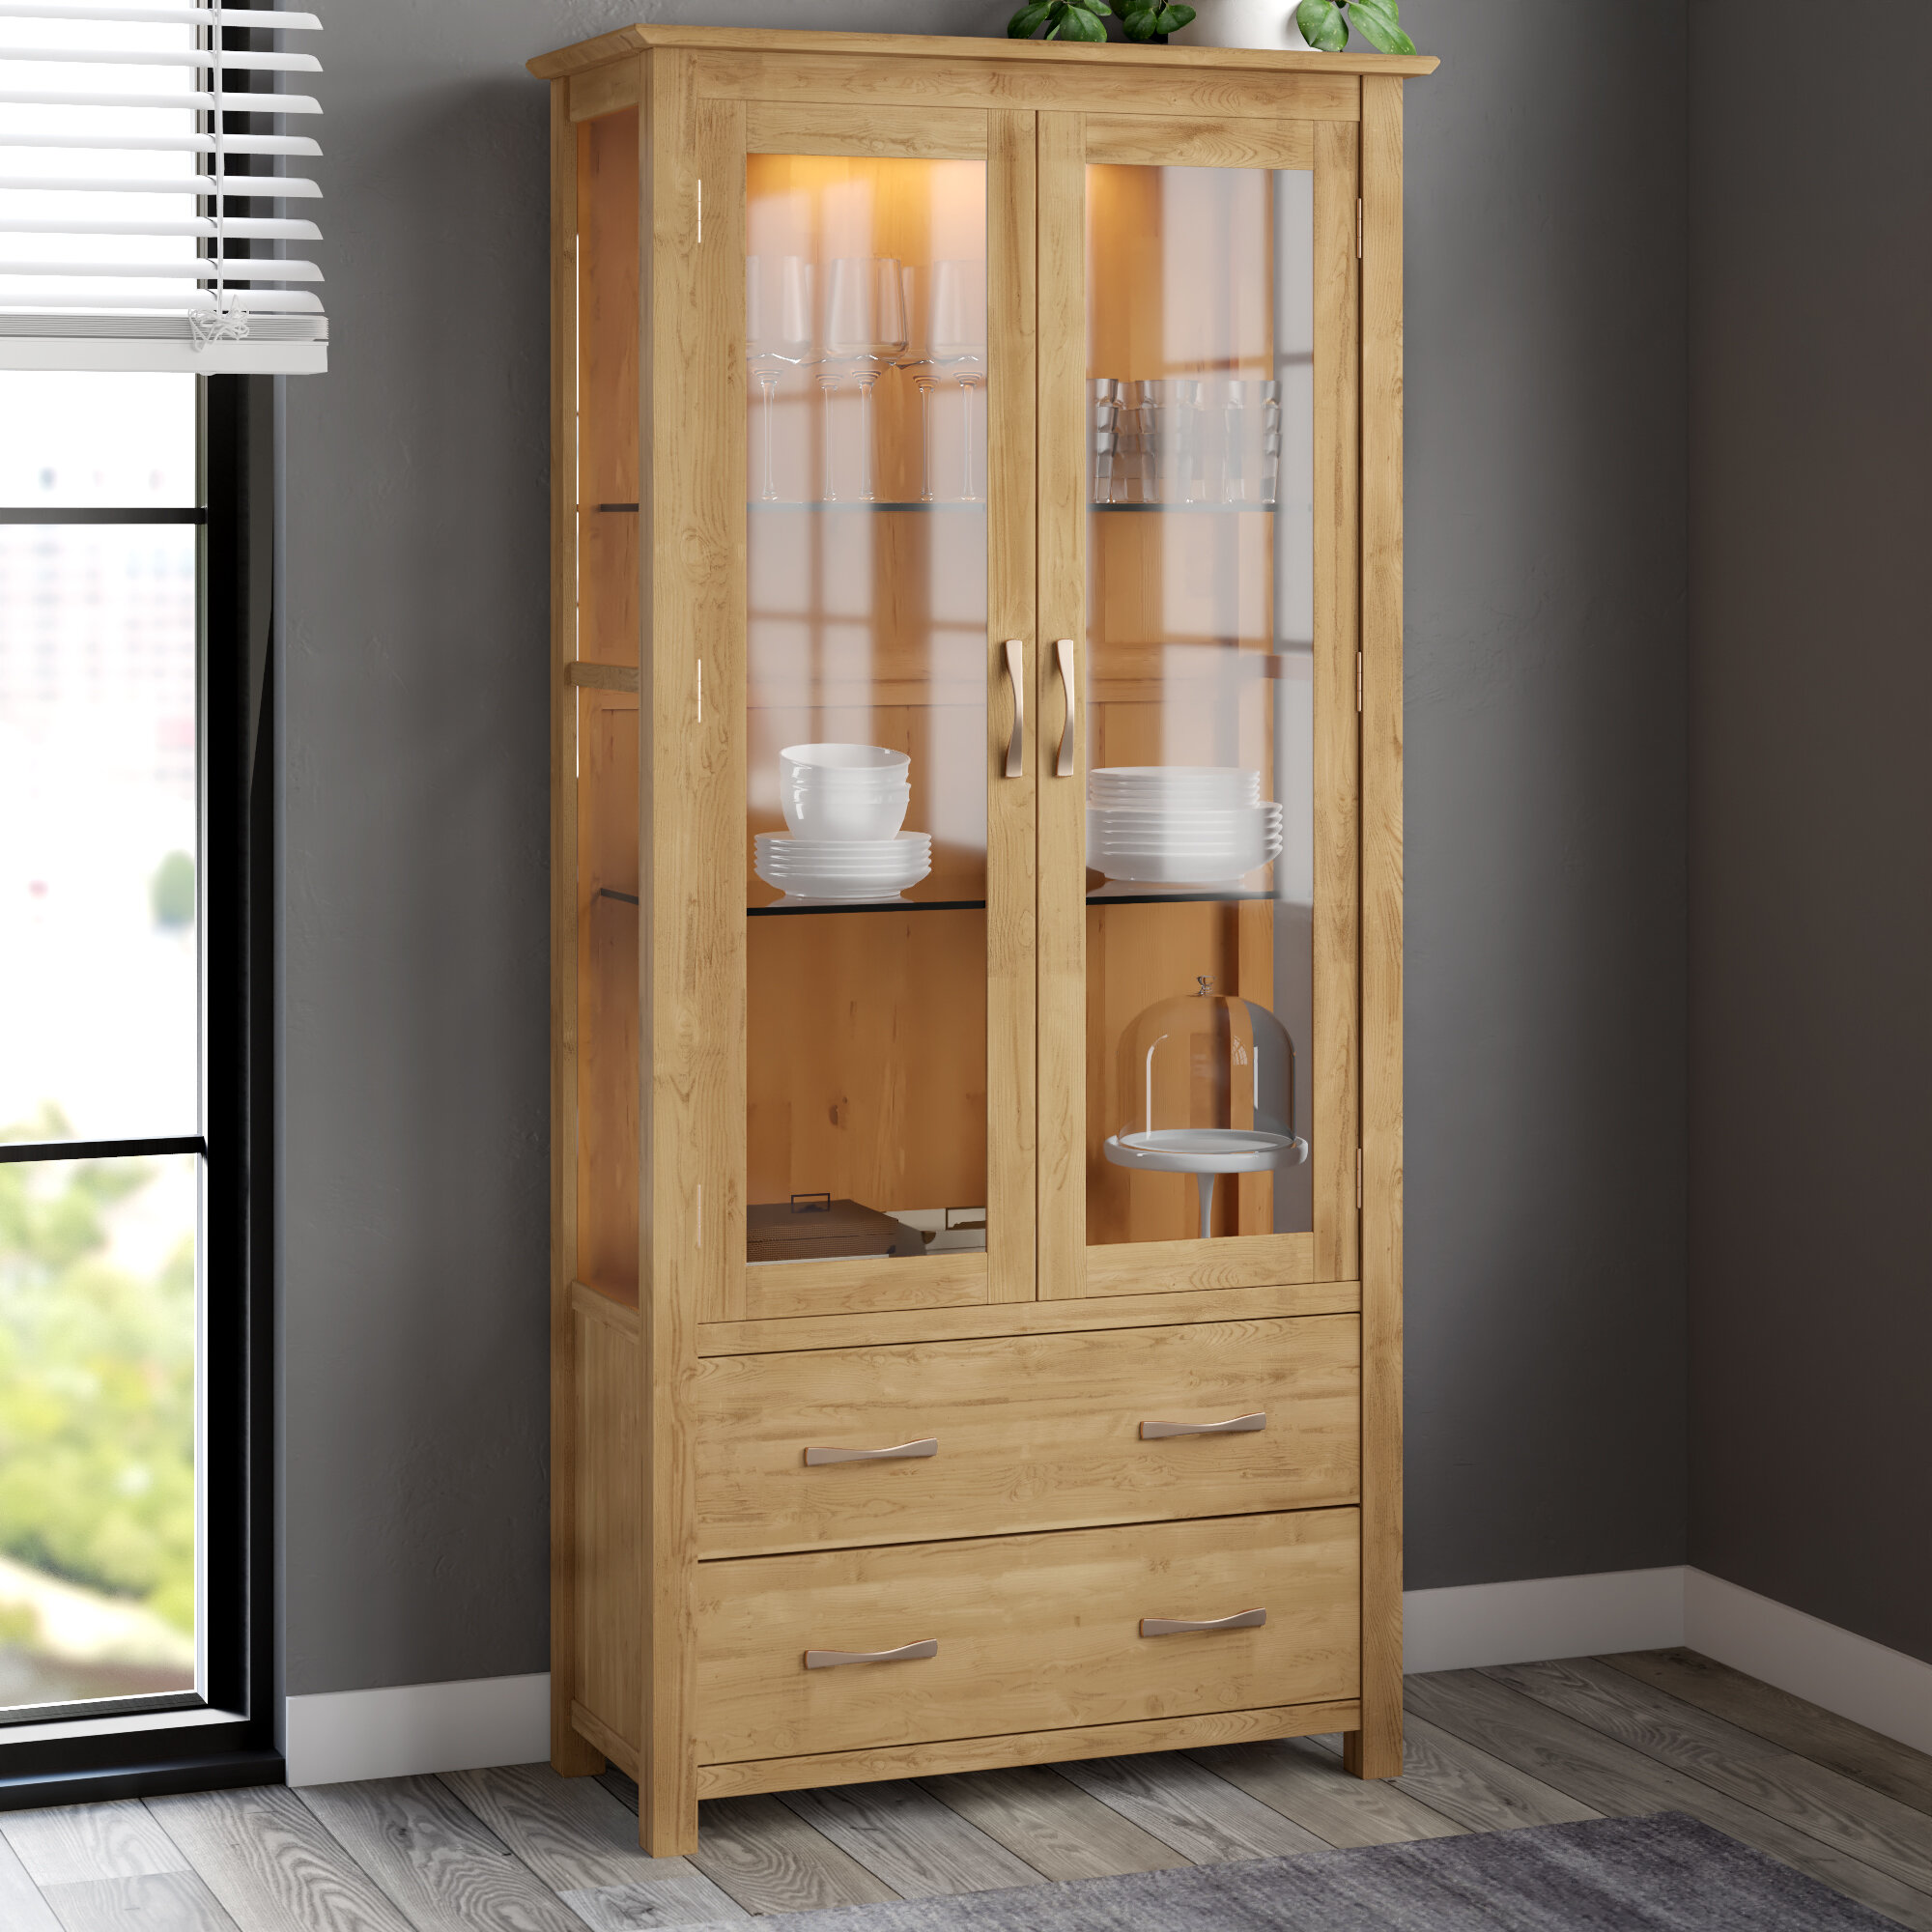 Gracie Oaks Marley Solid Oak Display Cabinet Reviews Wayfair Co Uk